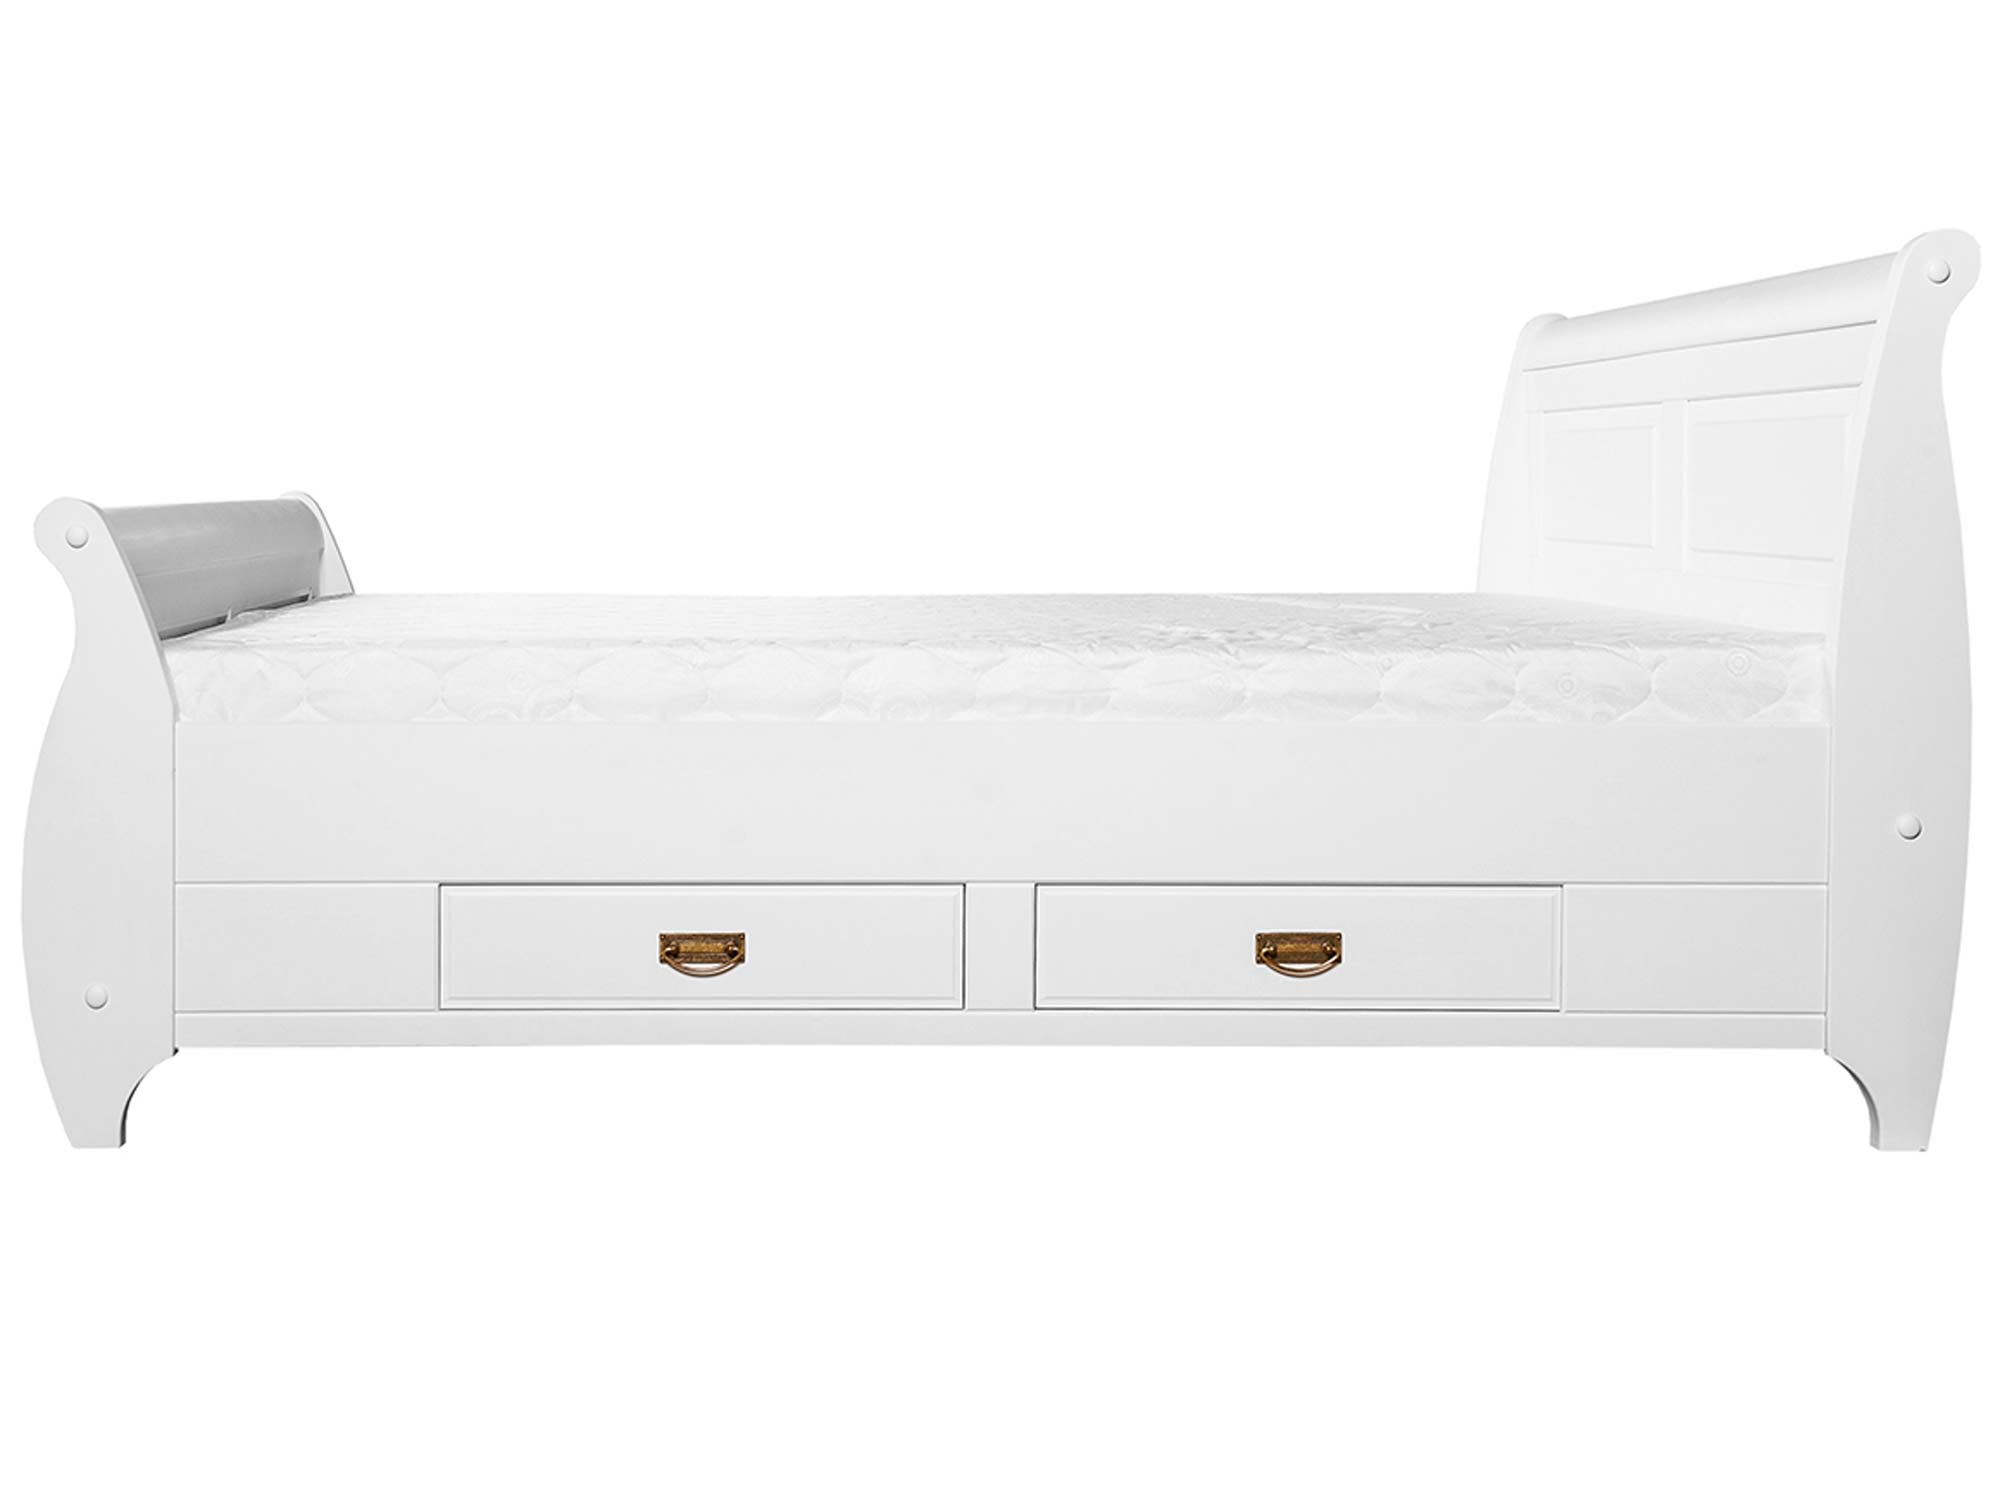 Drewniane łóżko białe profil SENA